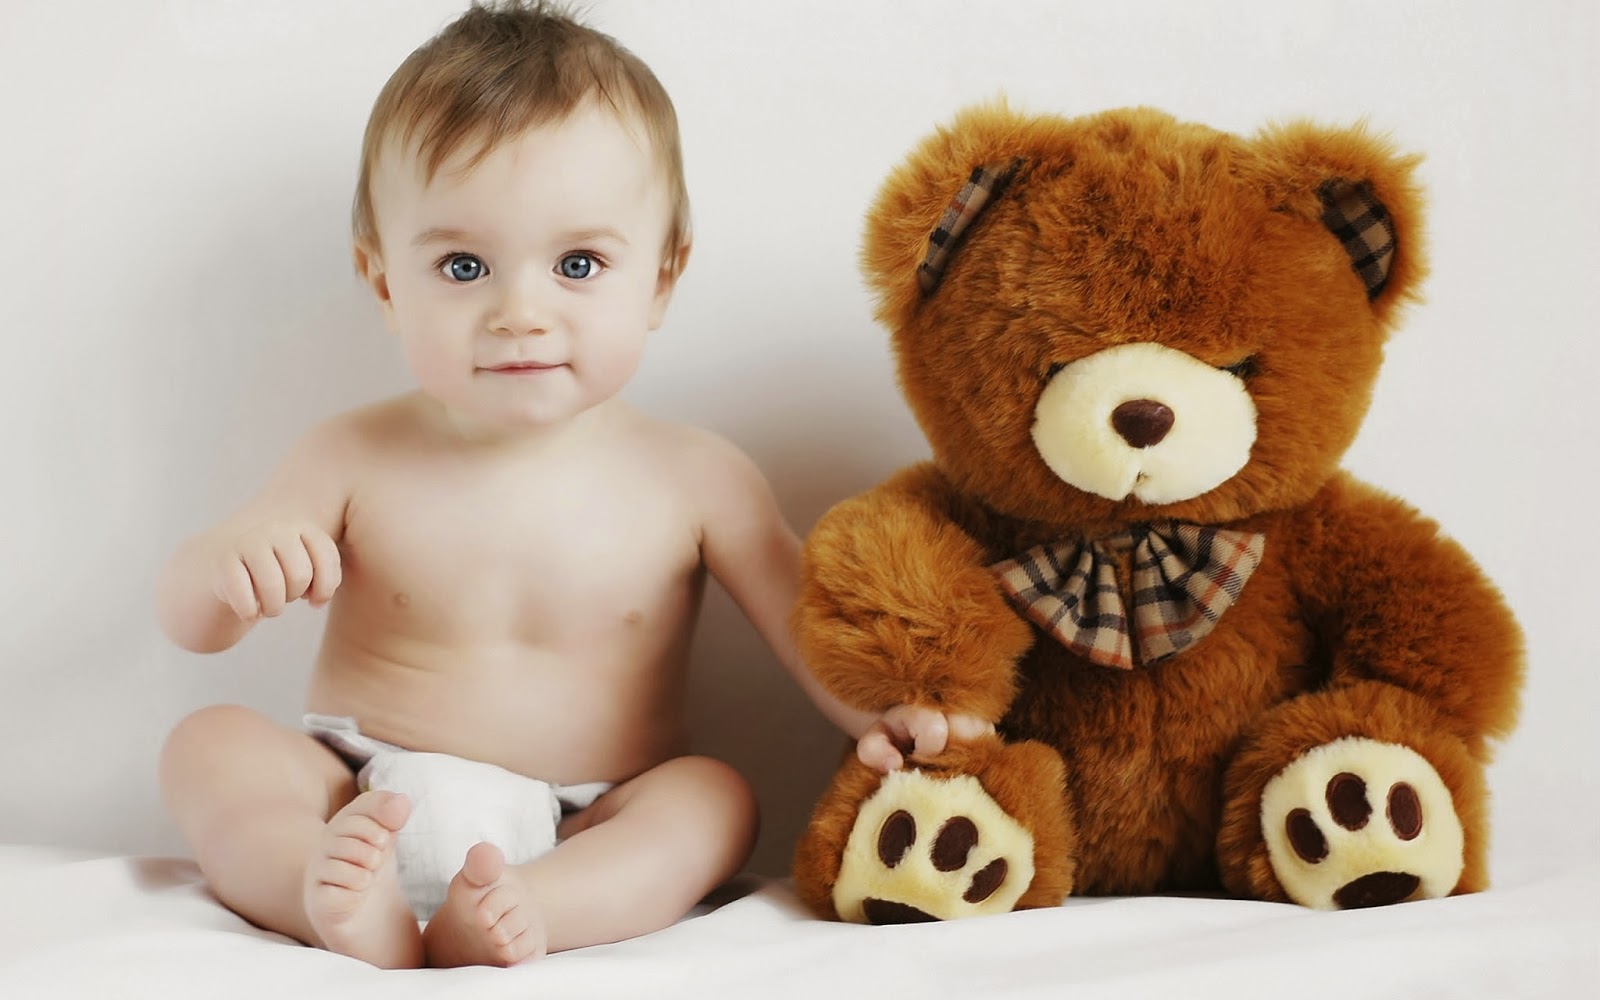 Baby With Toy Teddy Bear Photo Hd - Bebe Con Su Peluche - HD Wallpaper 